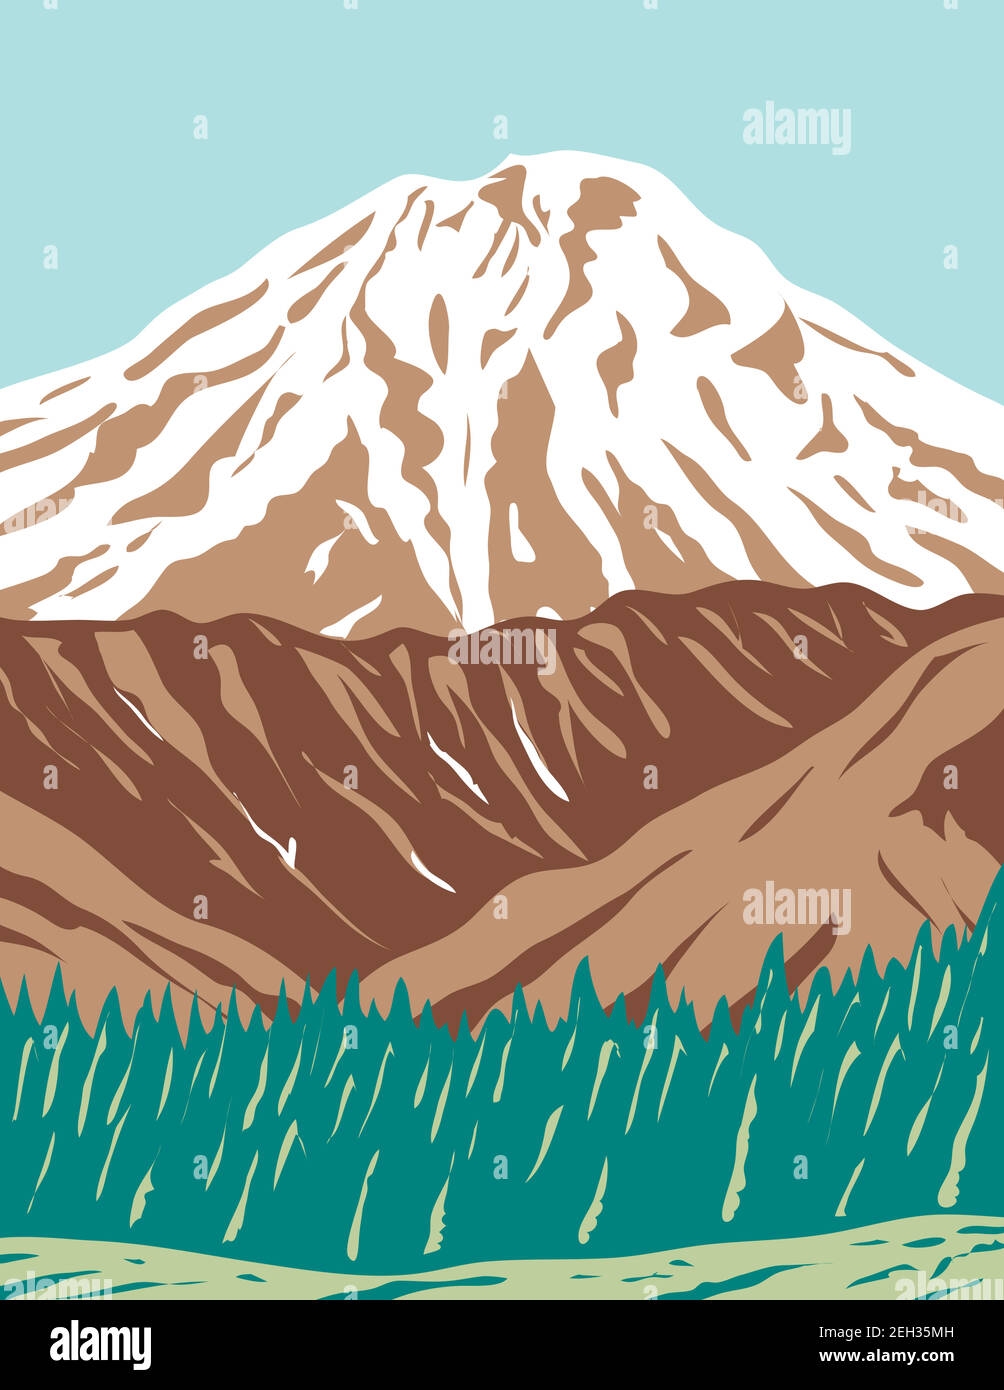 WPA poster art del Vulcano Redoubt o Mount Redoubt, uno stratovulcano attivo nella gamma aleutica in gran parte vulcanica dell'Alaska fatto in opere progetti Illustrazione Vettoriale